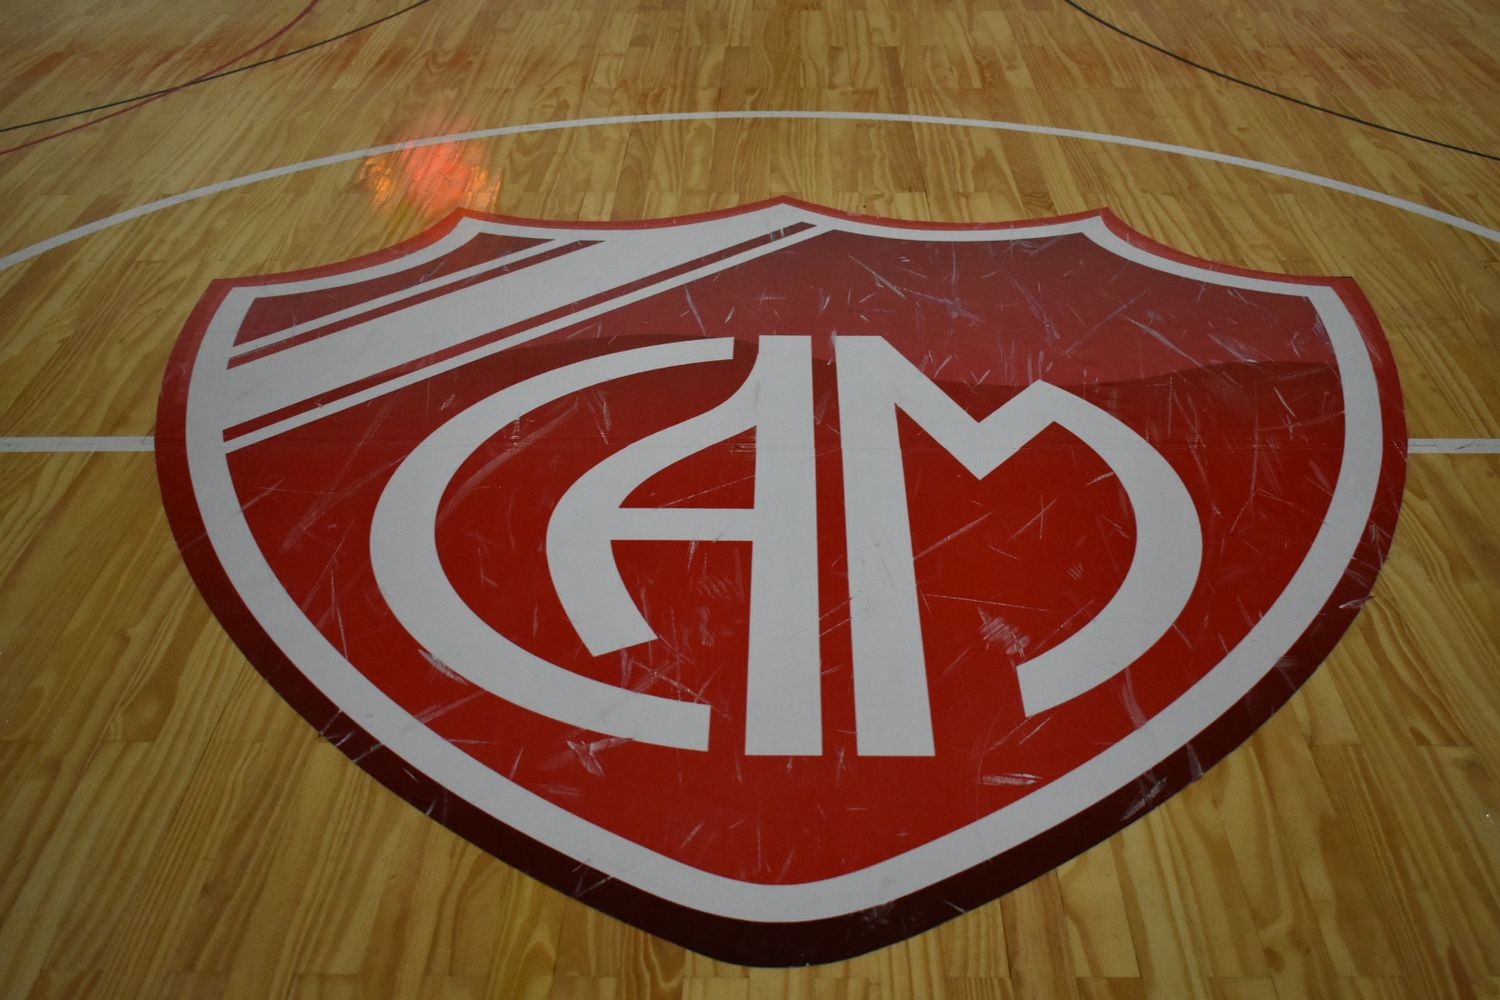 Cuatro equipos profesionales de básquet jugarán amistosos en Mitre